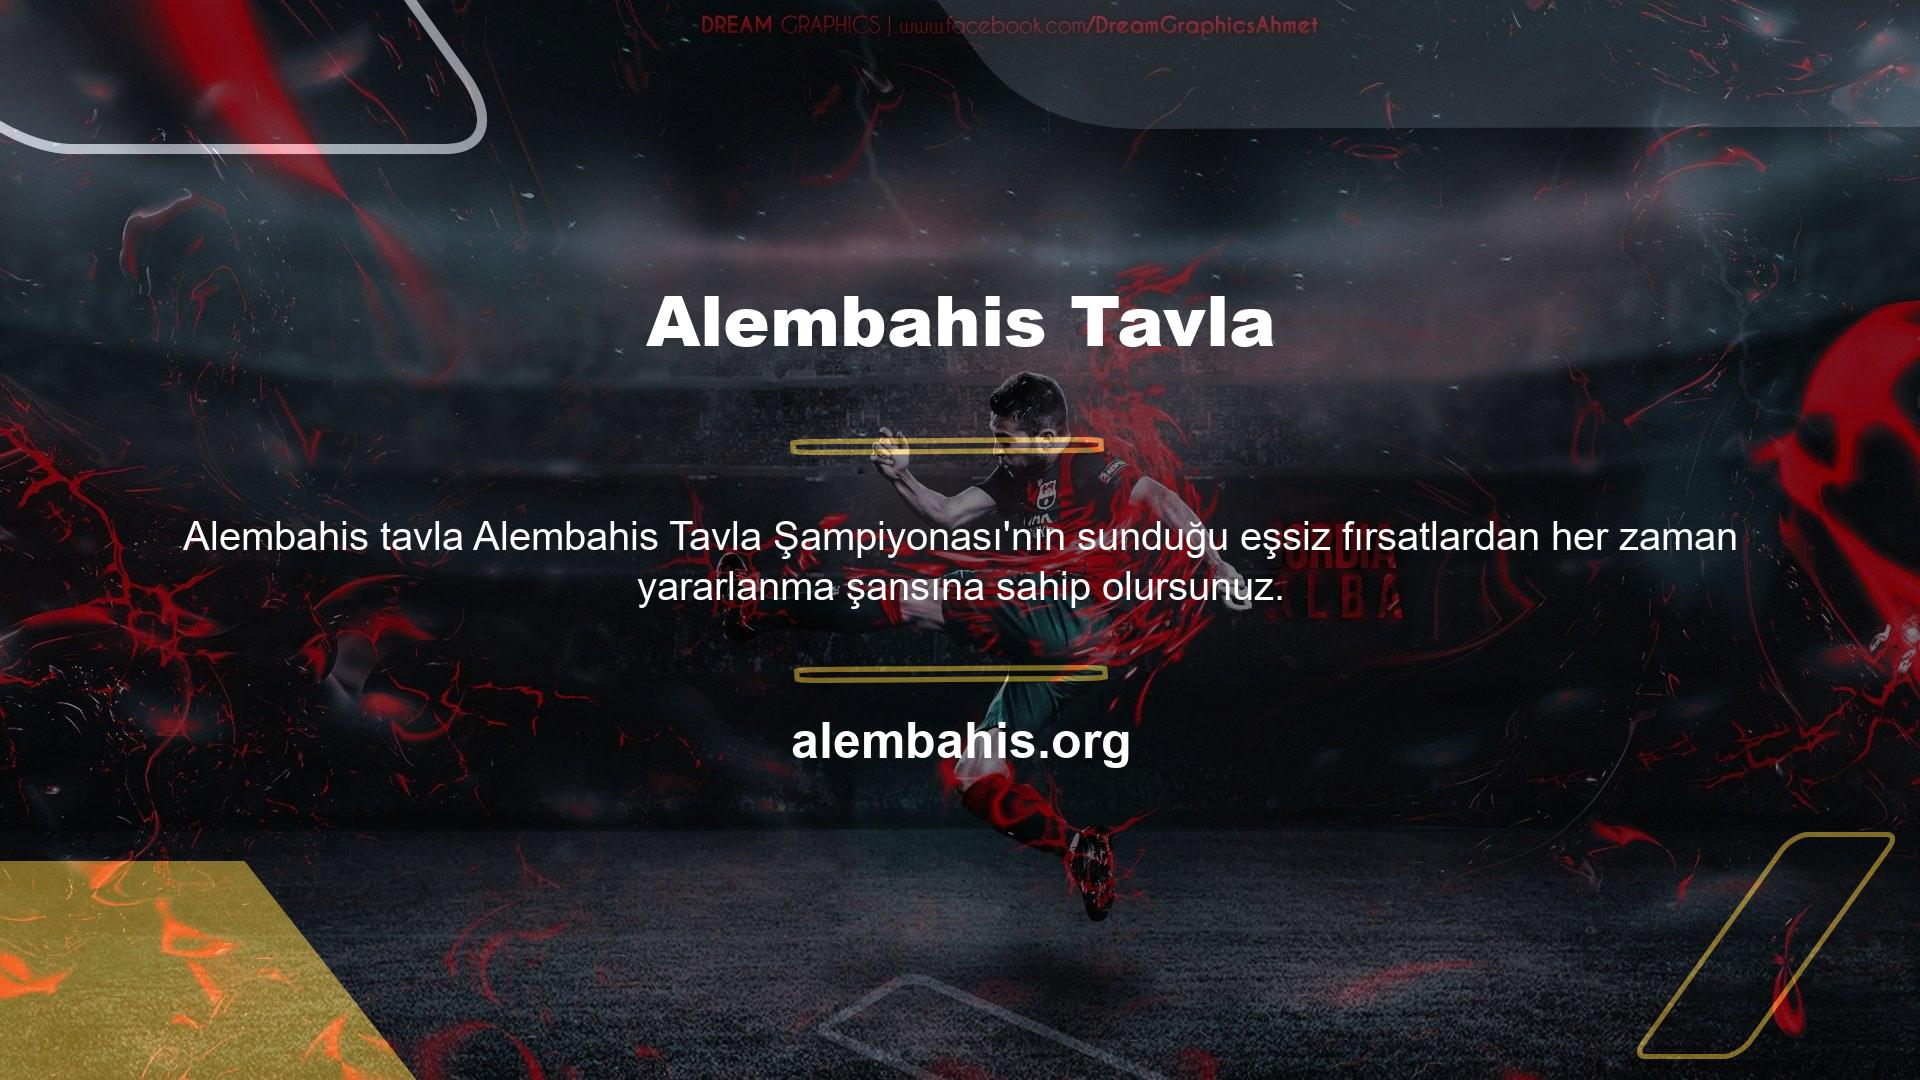 Tavla, Alembahis tavla turnuvalarında tüm Türk oyuncularının favori oyunlarından biri haline geldi